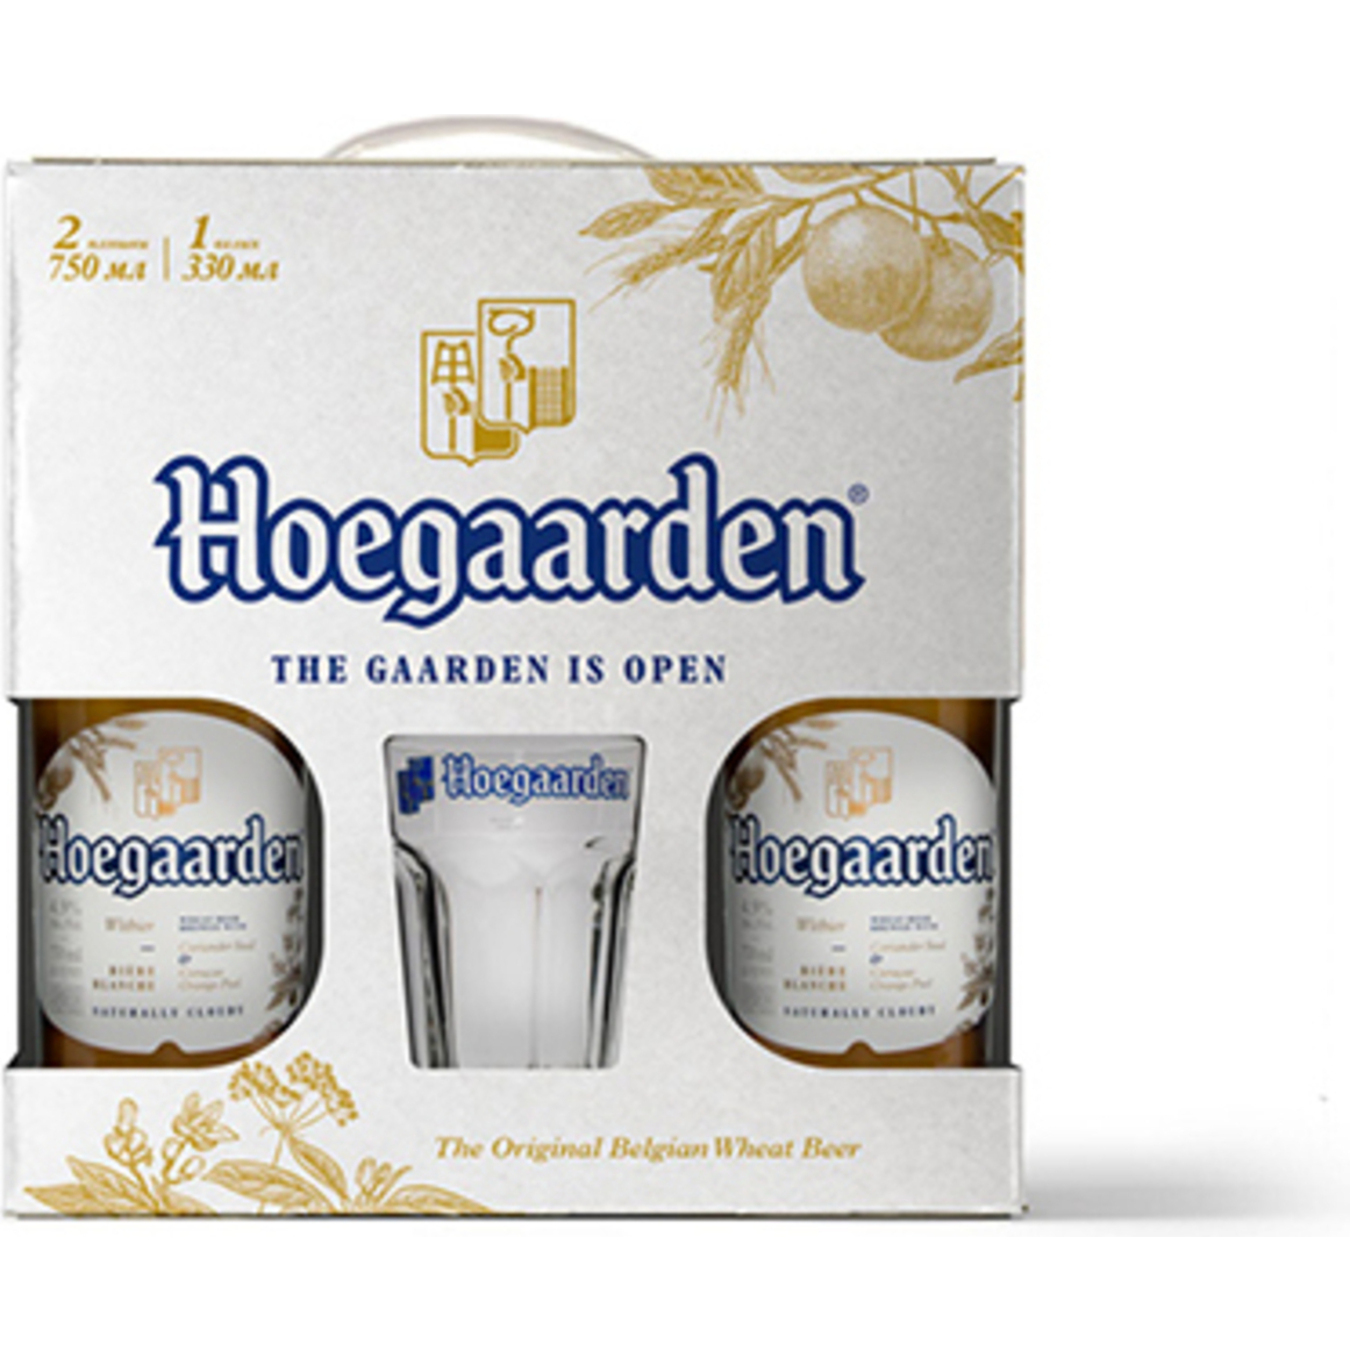 Пиво Hoegaarden White светлое нефильтрованное 2шт 0,75л + бокал 0,33л